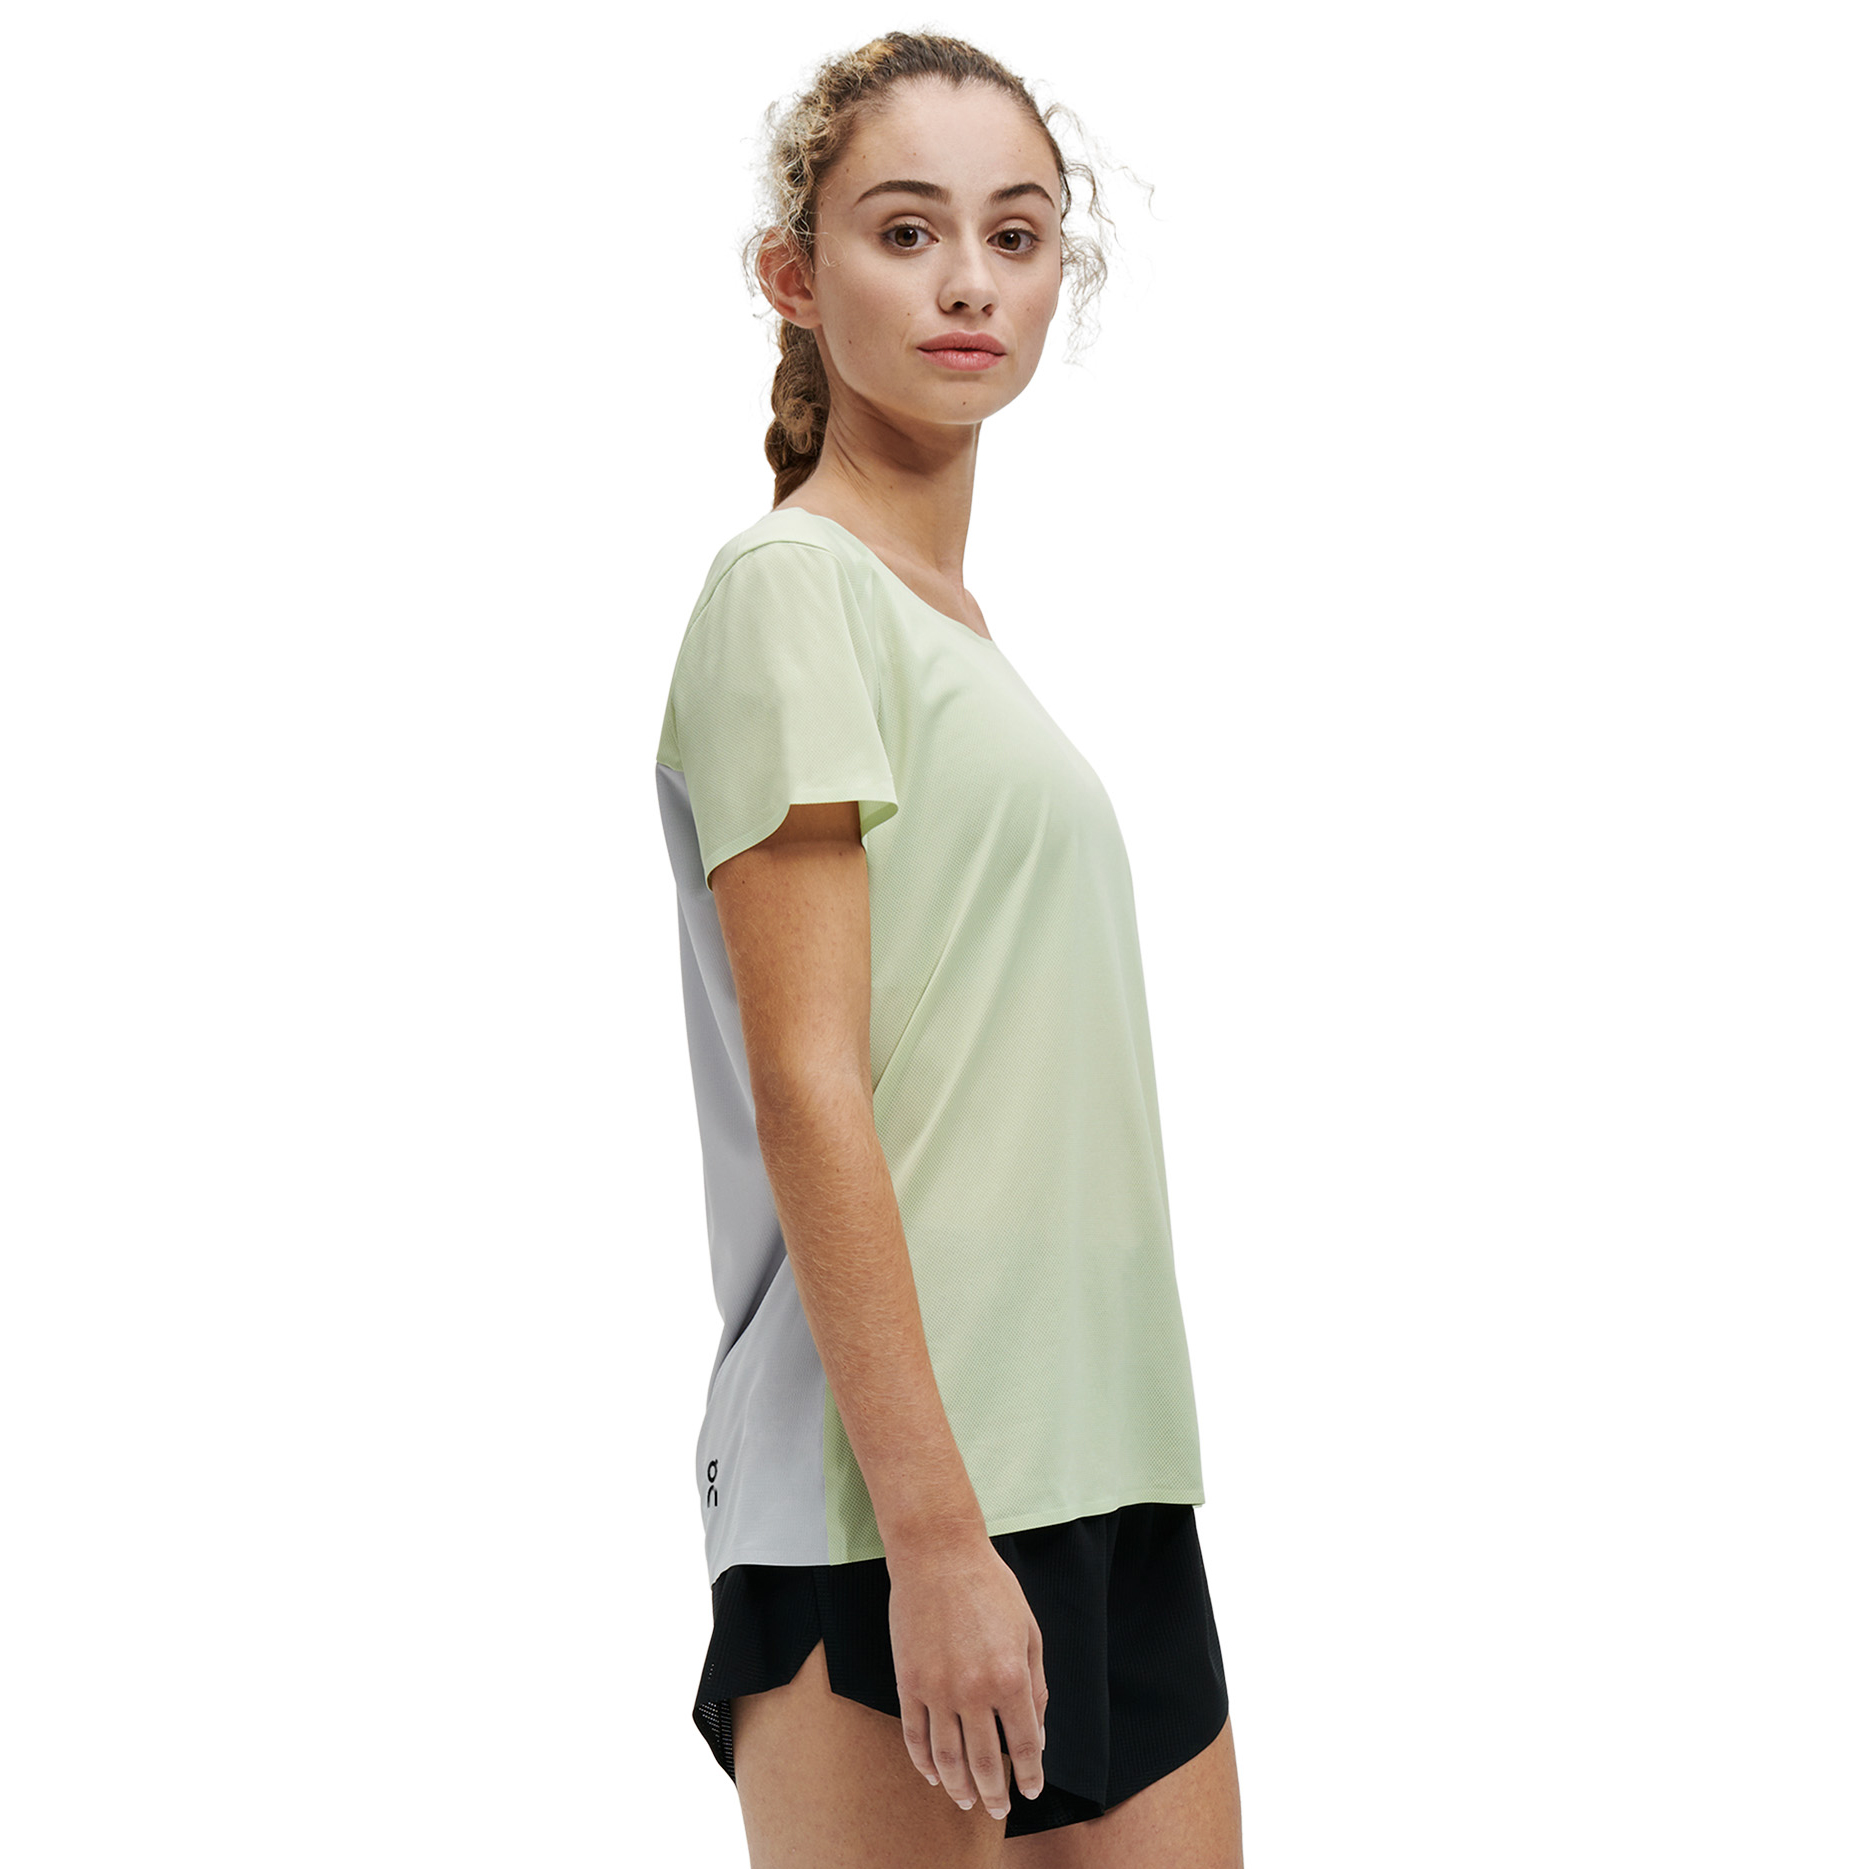 Produktbild von On Performance-T Damen Laufshirt - Meadow &amp; Glacier